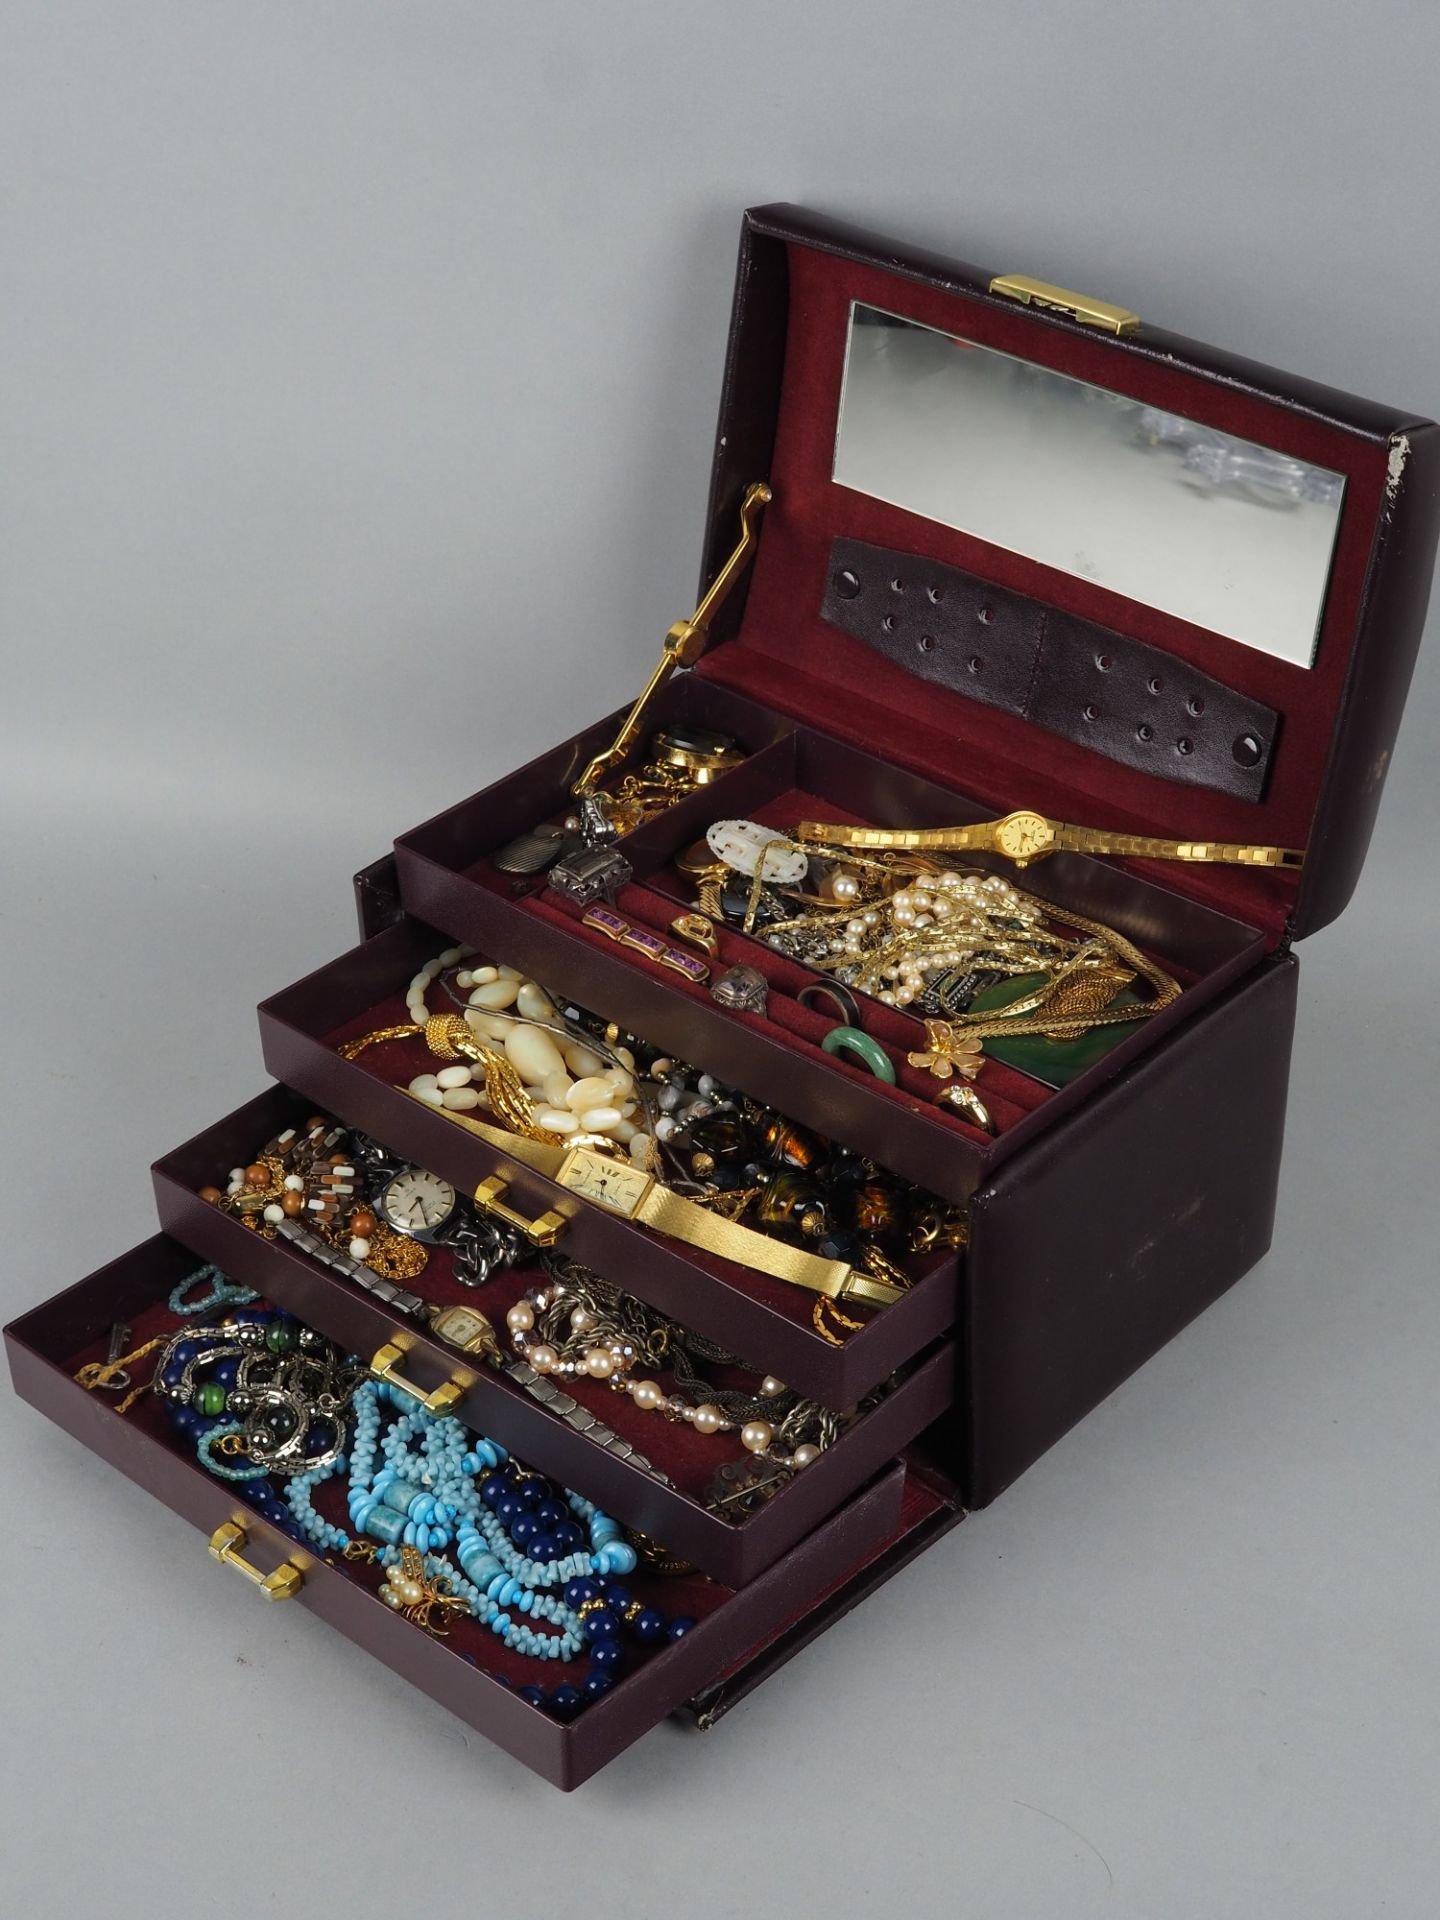 Convolute costume jewelry in jewelry case.